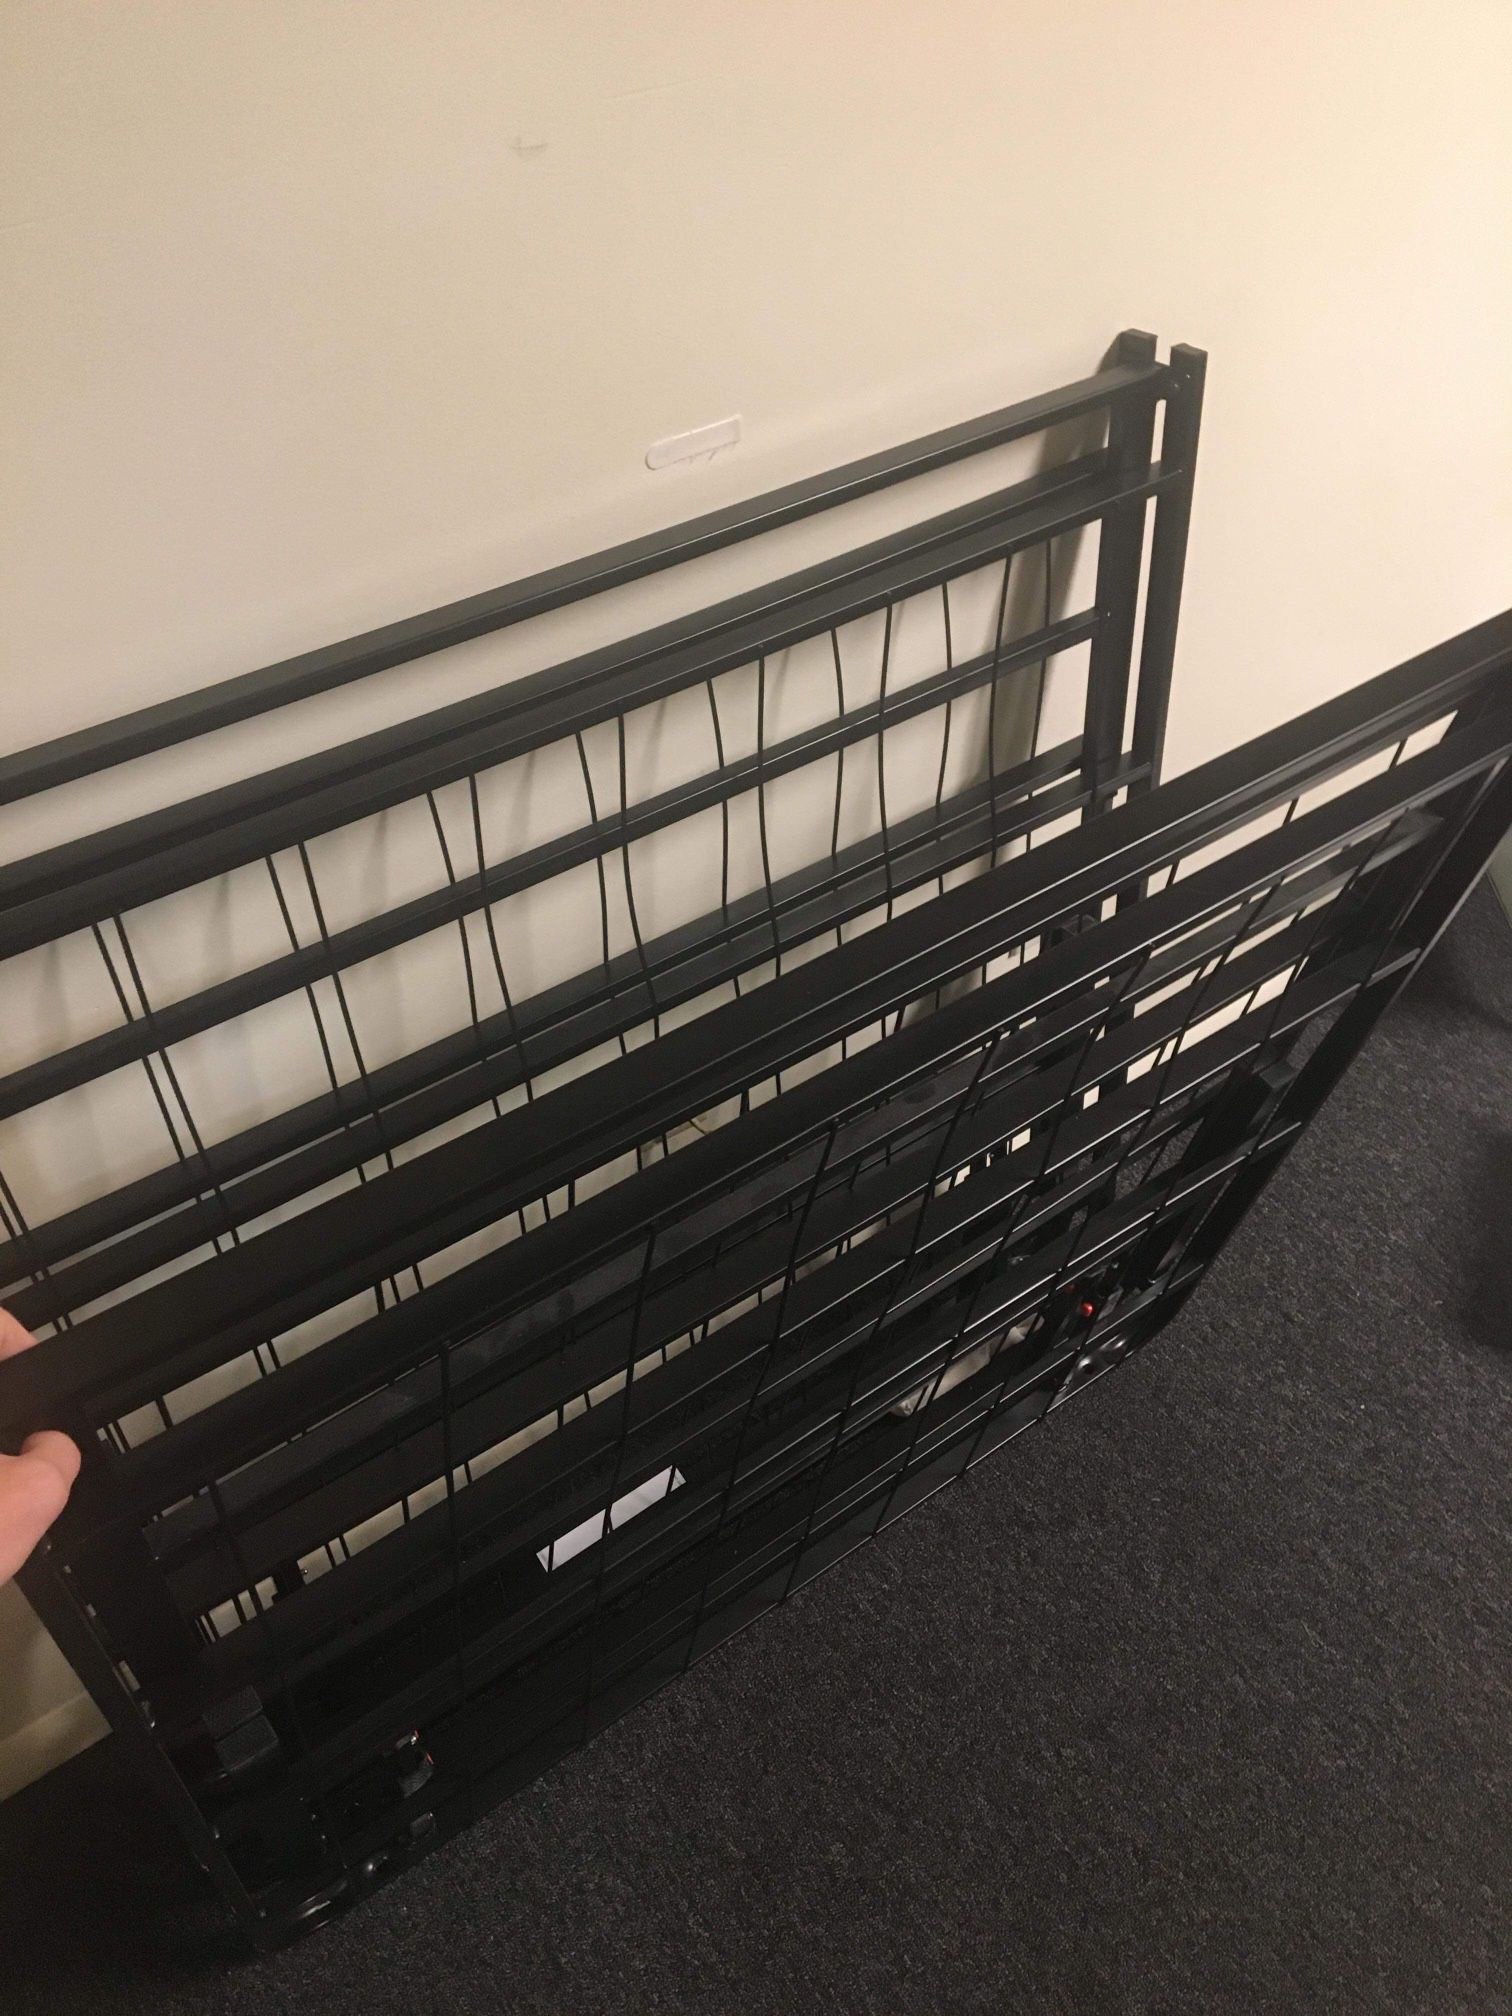 Foldable Bed Frames